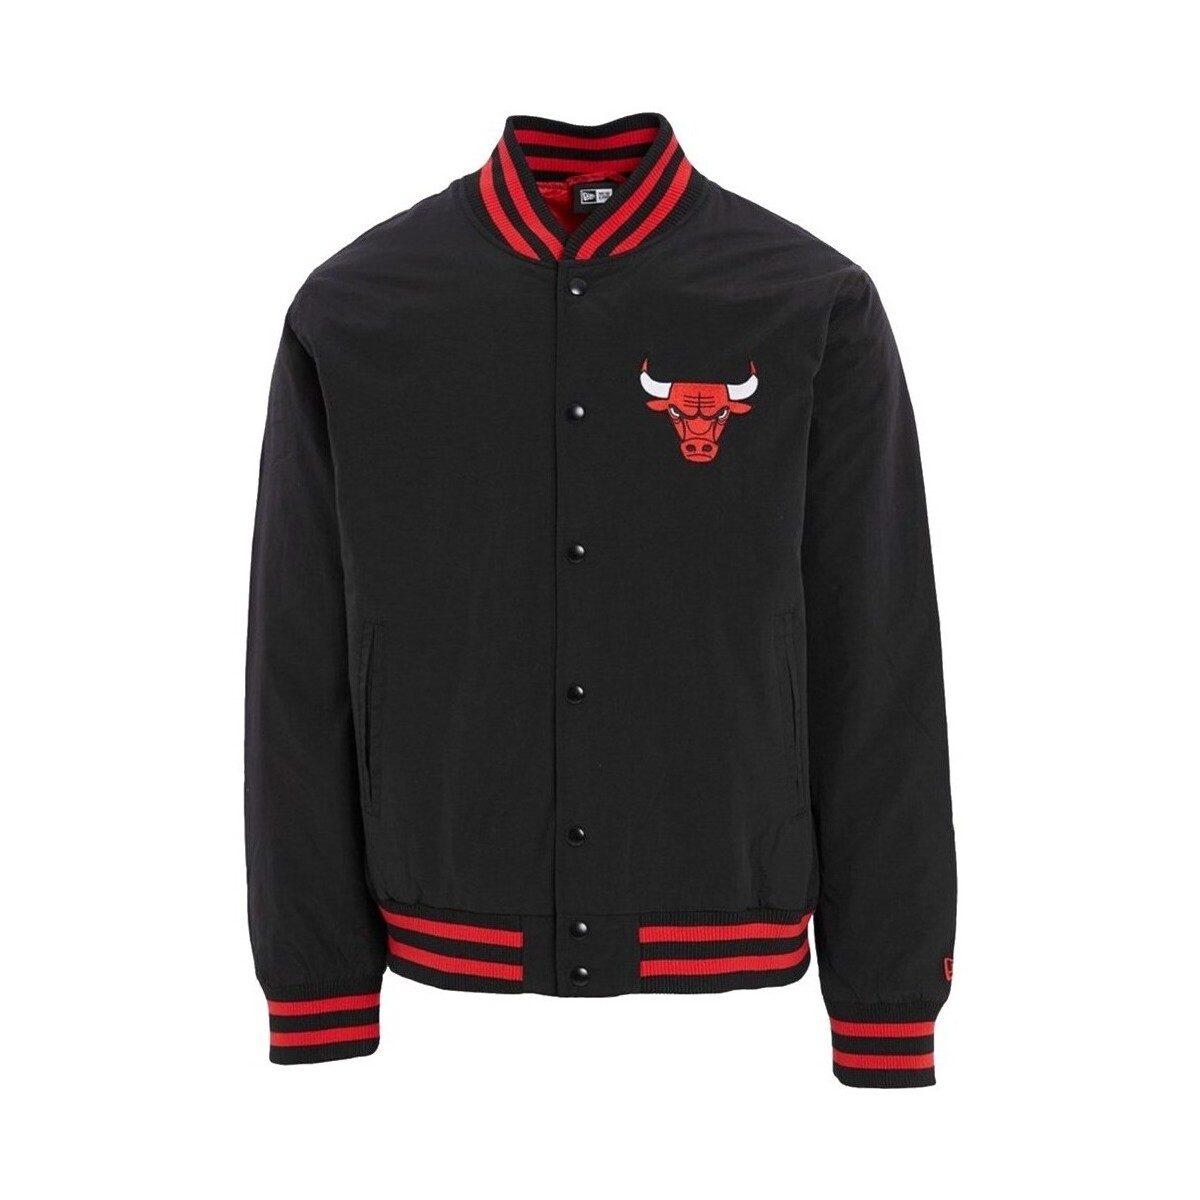 Oblečenie Muž Saká a blejzre New-Era Team Logo Bomber Chicago Bulls Jacket Čierna, Bordó